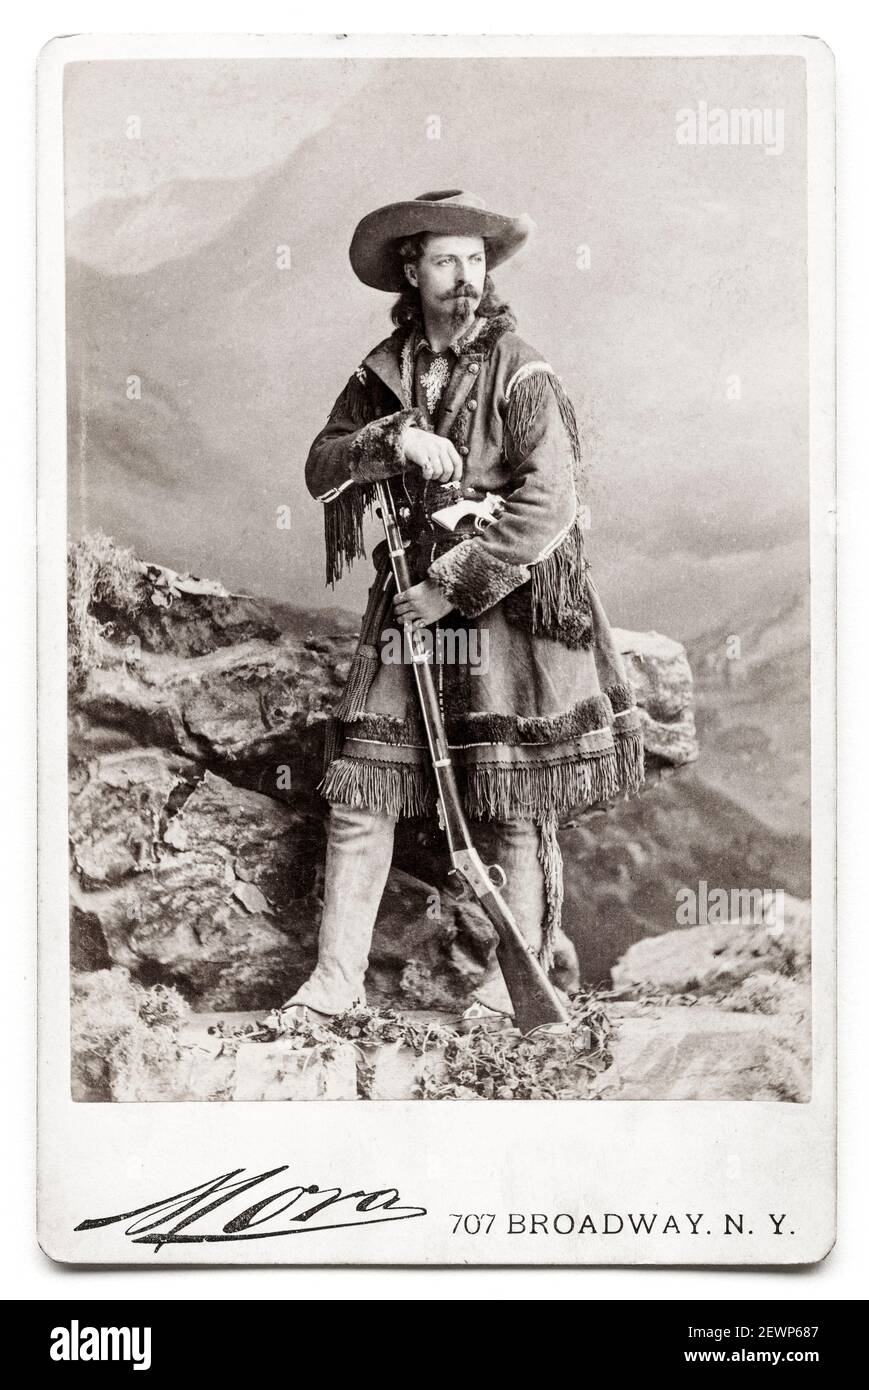 Buffalo Bill Cody, (William Frederick Cody, 1846-1917), amerikanischer Soldat, Bisons-Jäger und Showman, Portraitaufnahme von Jose Maria Mora, um 1875 Stockfoto